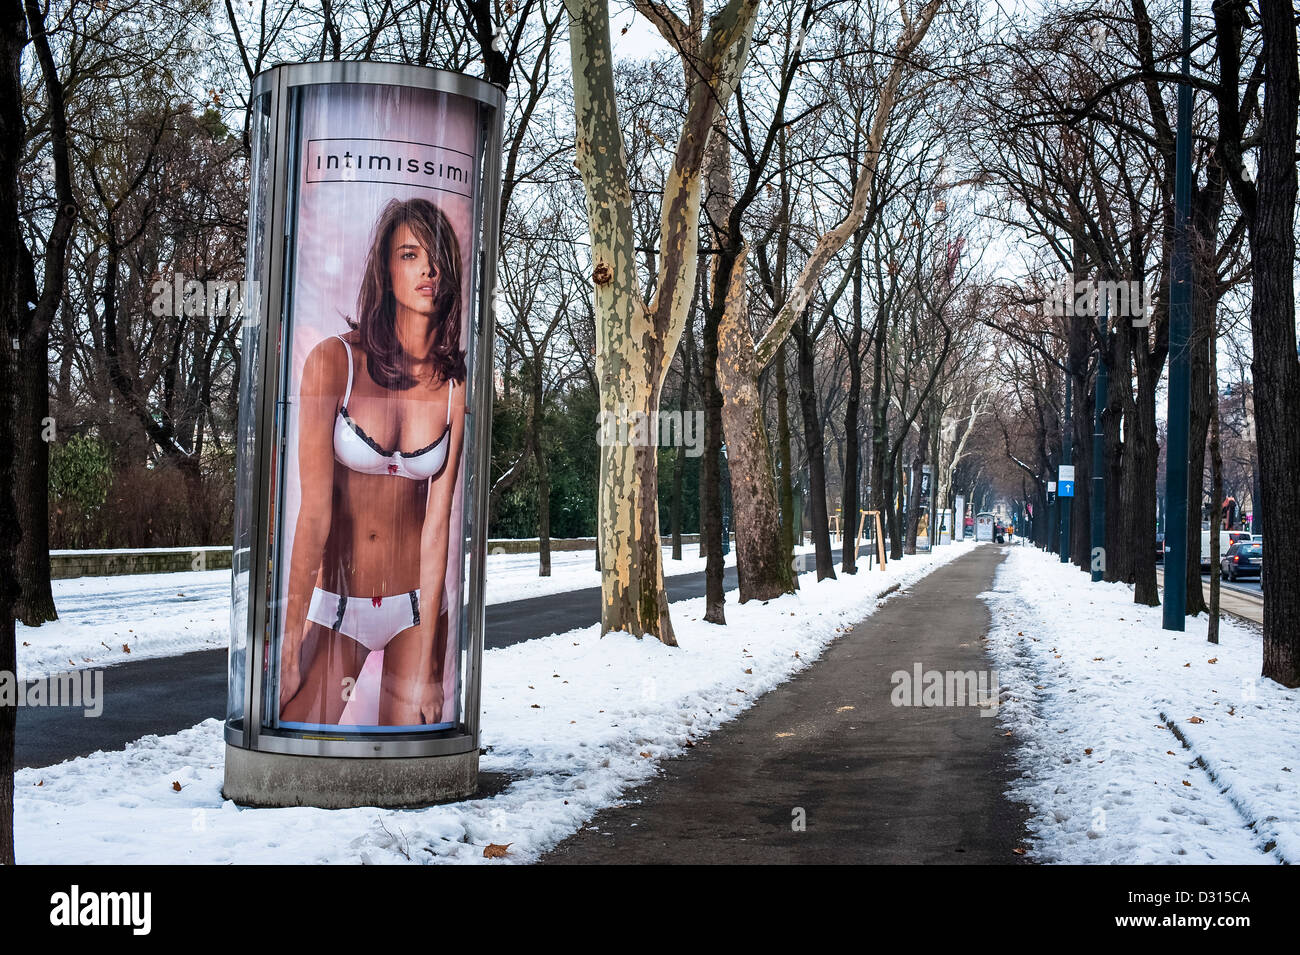 Intimissimi-Anzeige in Vienna-Park im winter Stockfoto